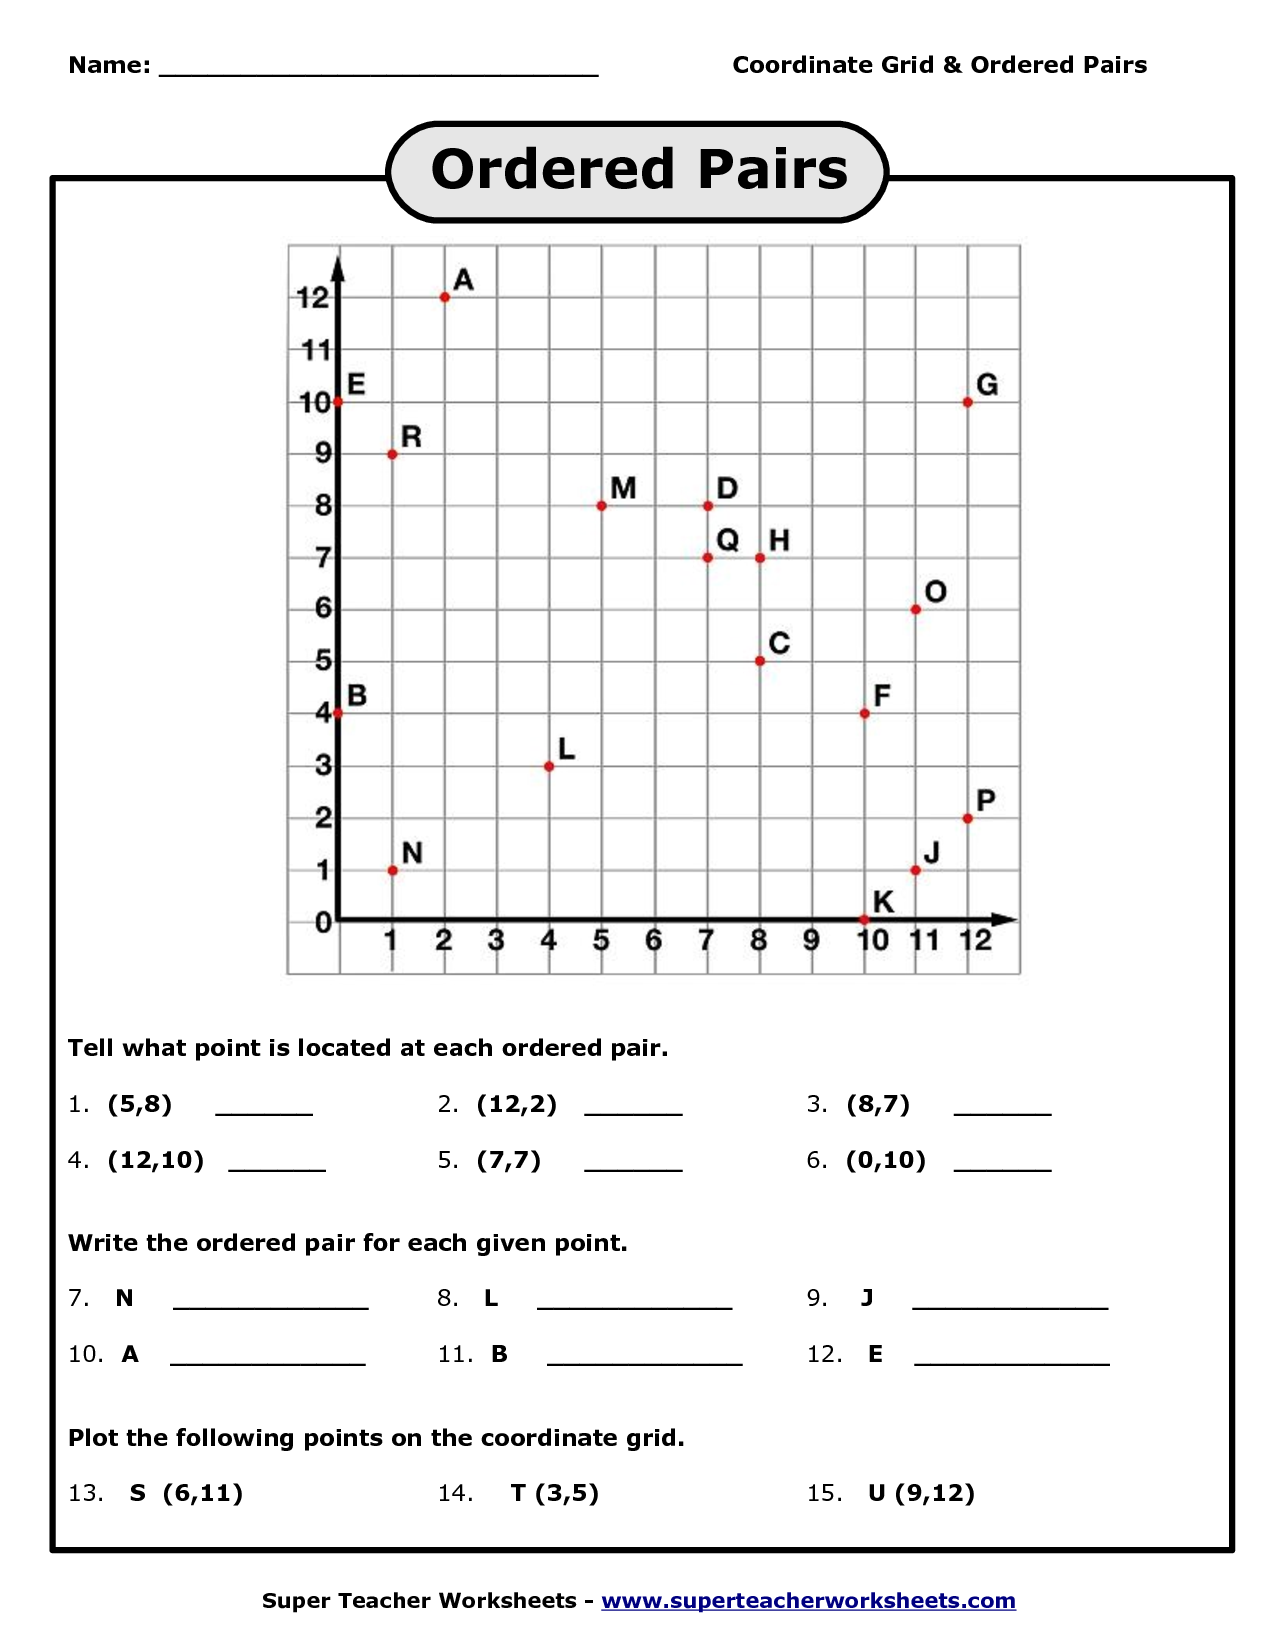 9-best-images-of-super-teacher-worksheets-graphing-bar-graph-worksheets-3rd-grade-grid